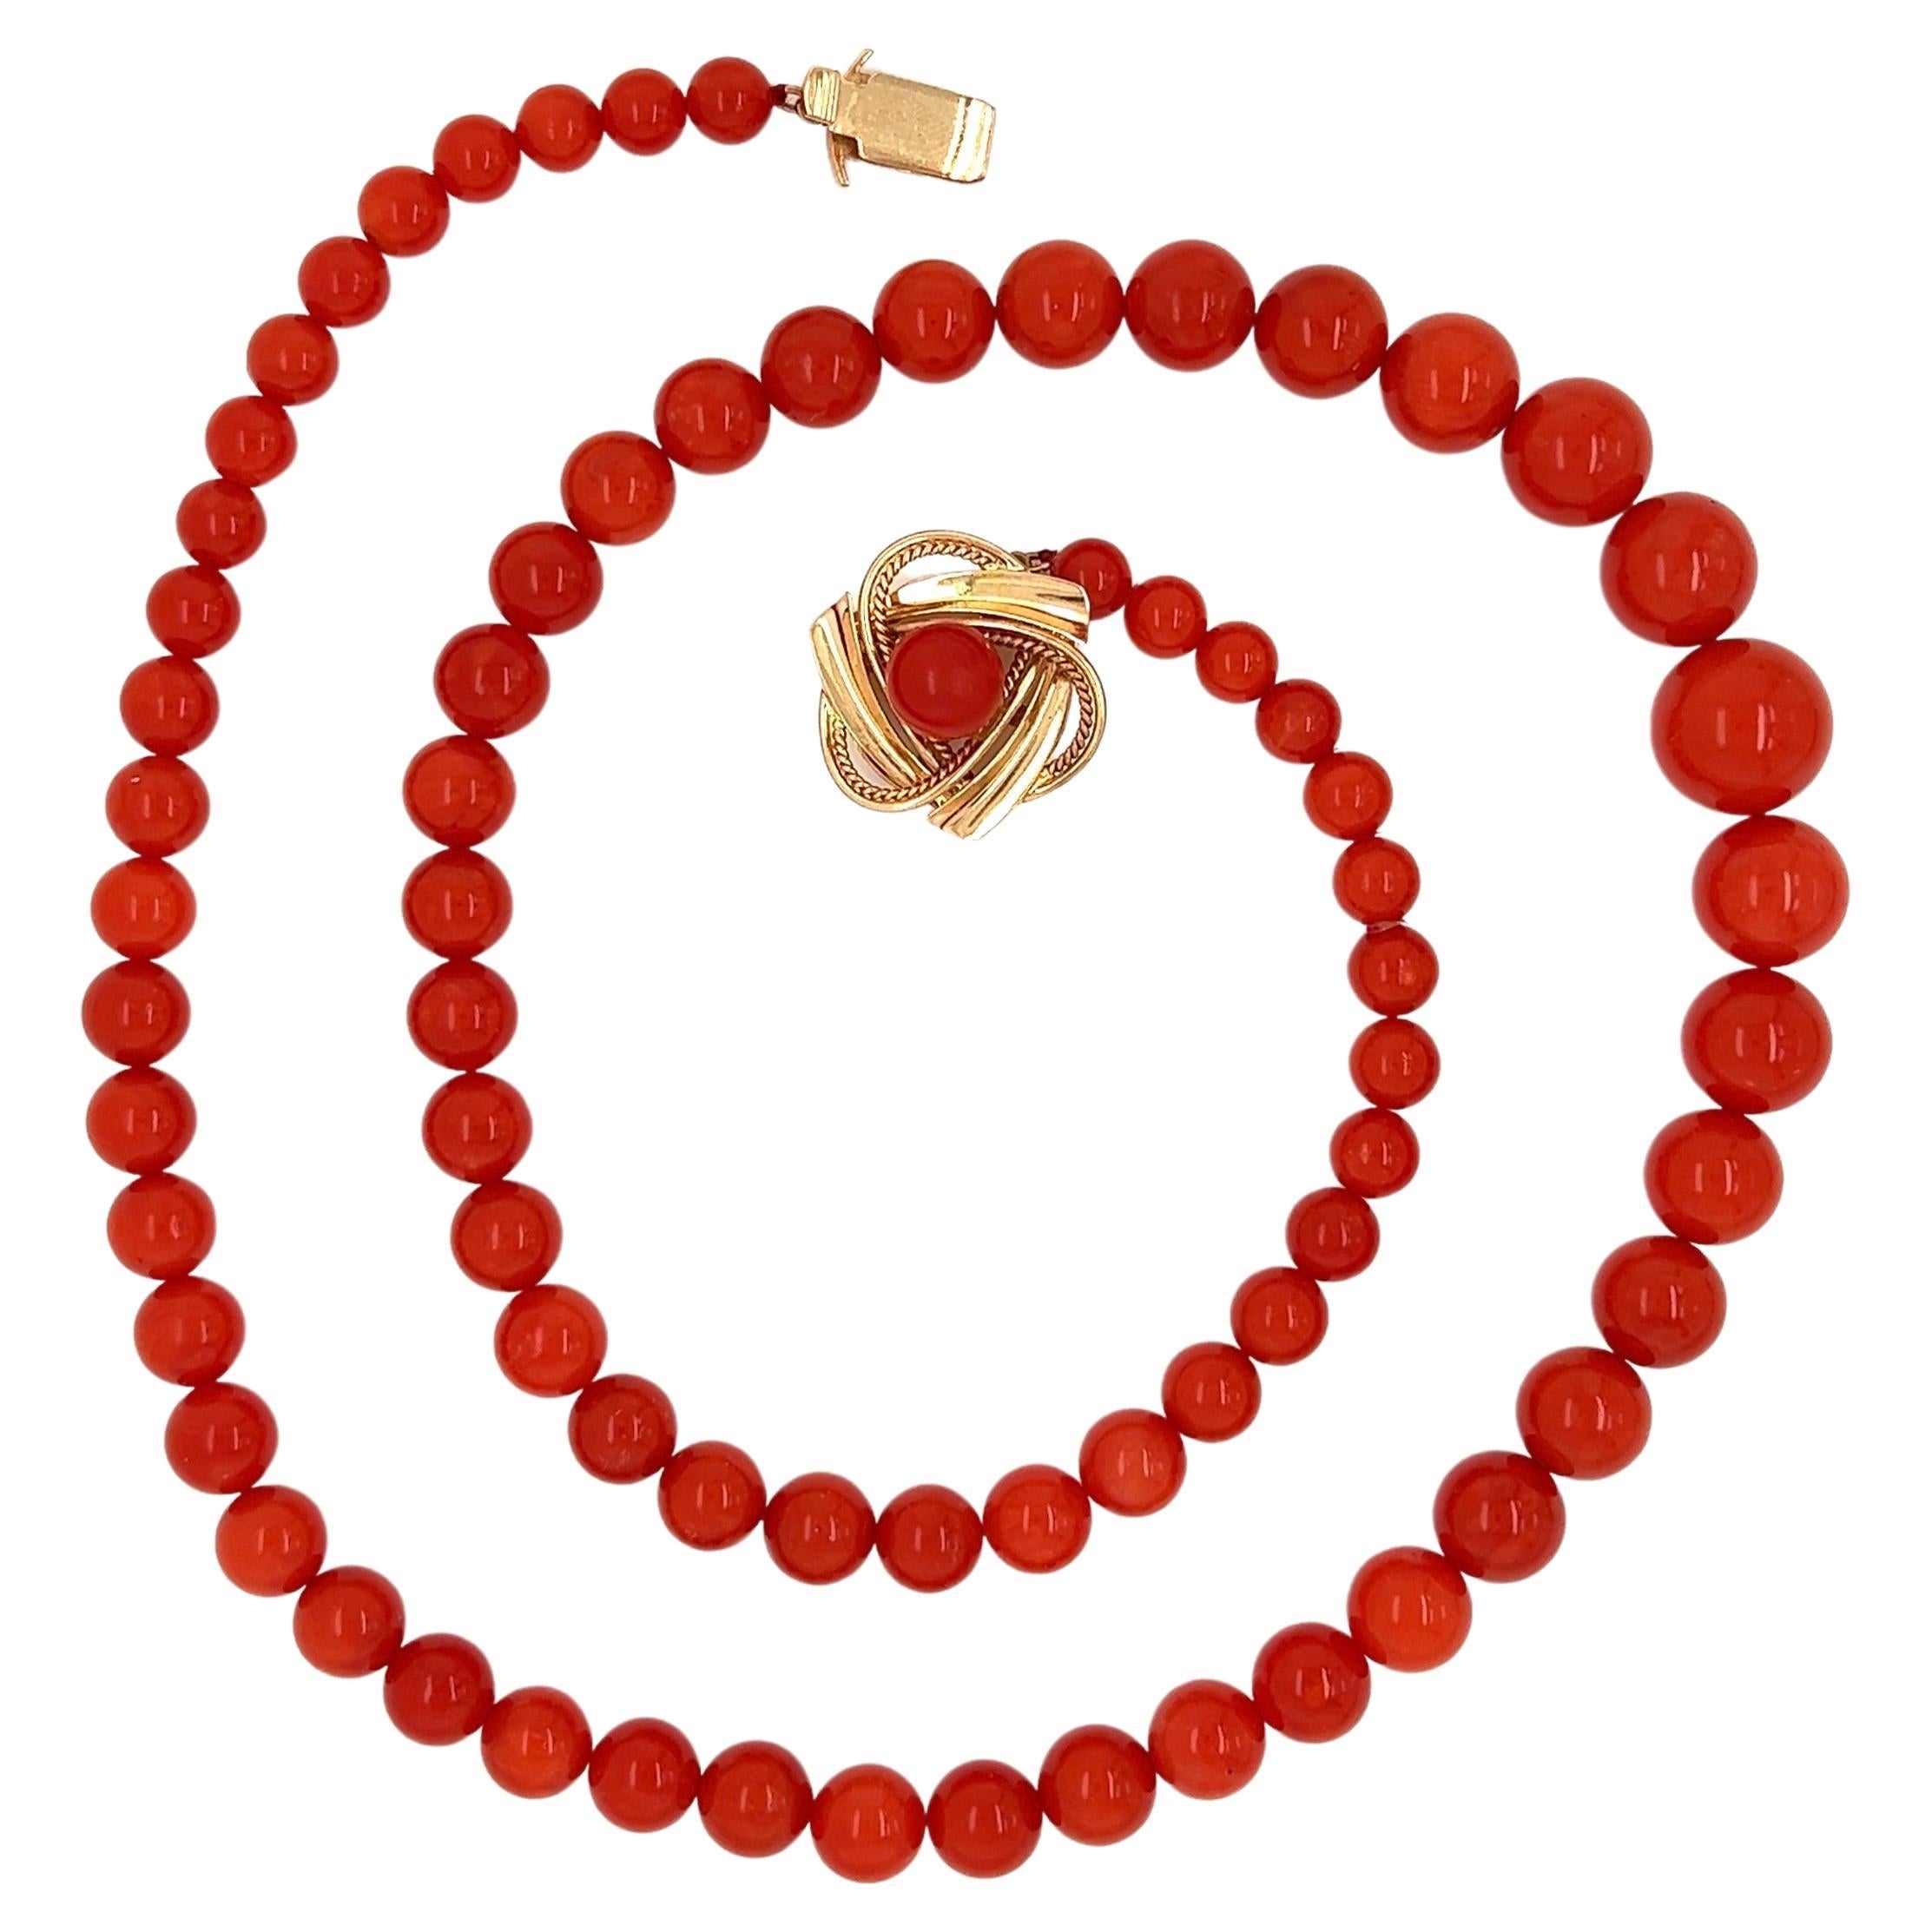 Halskette aus natürlicher roter Koralle mit Perlen und Goldverschluss